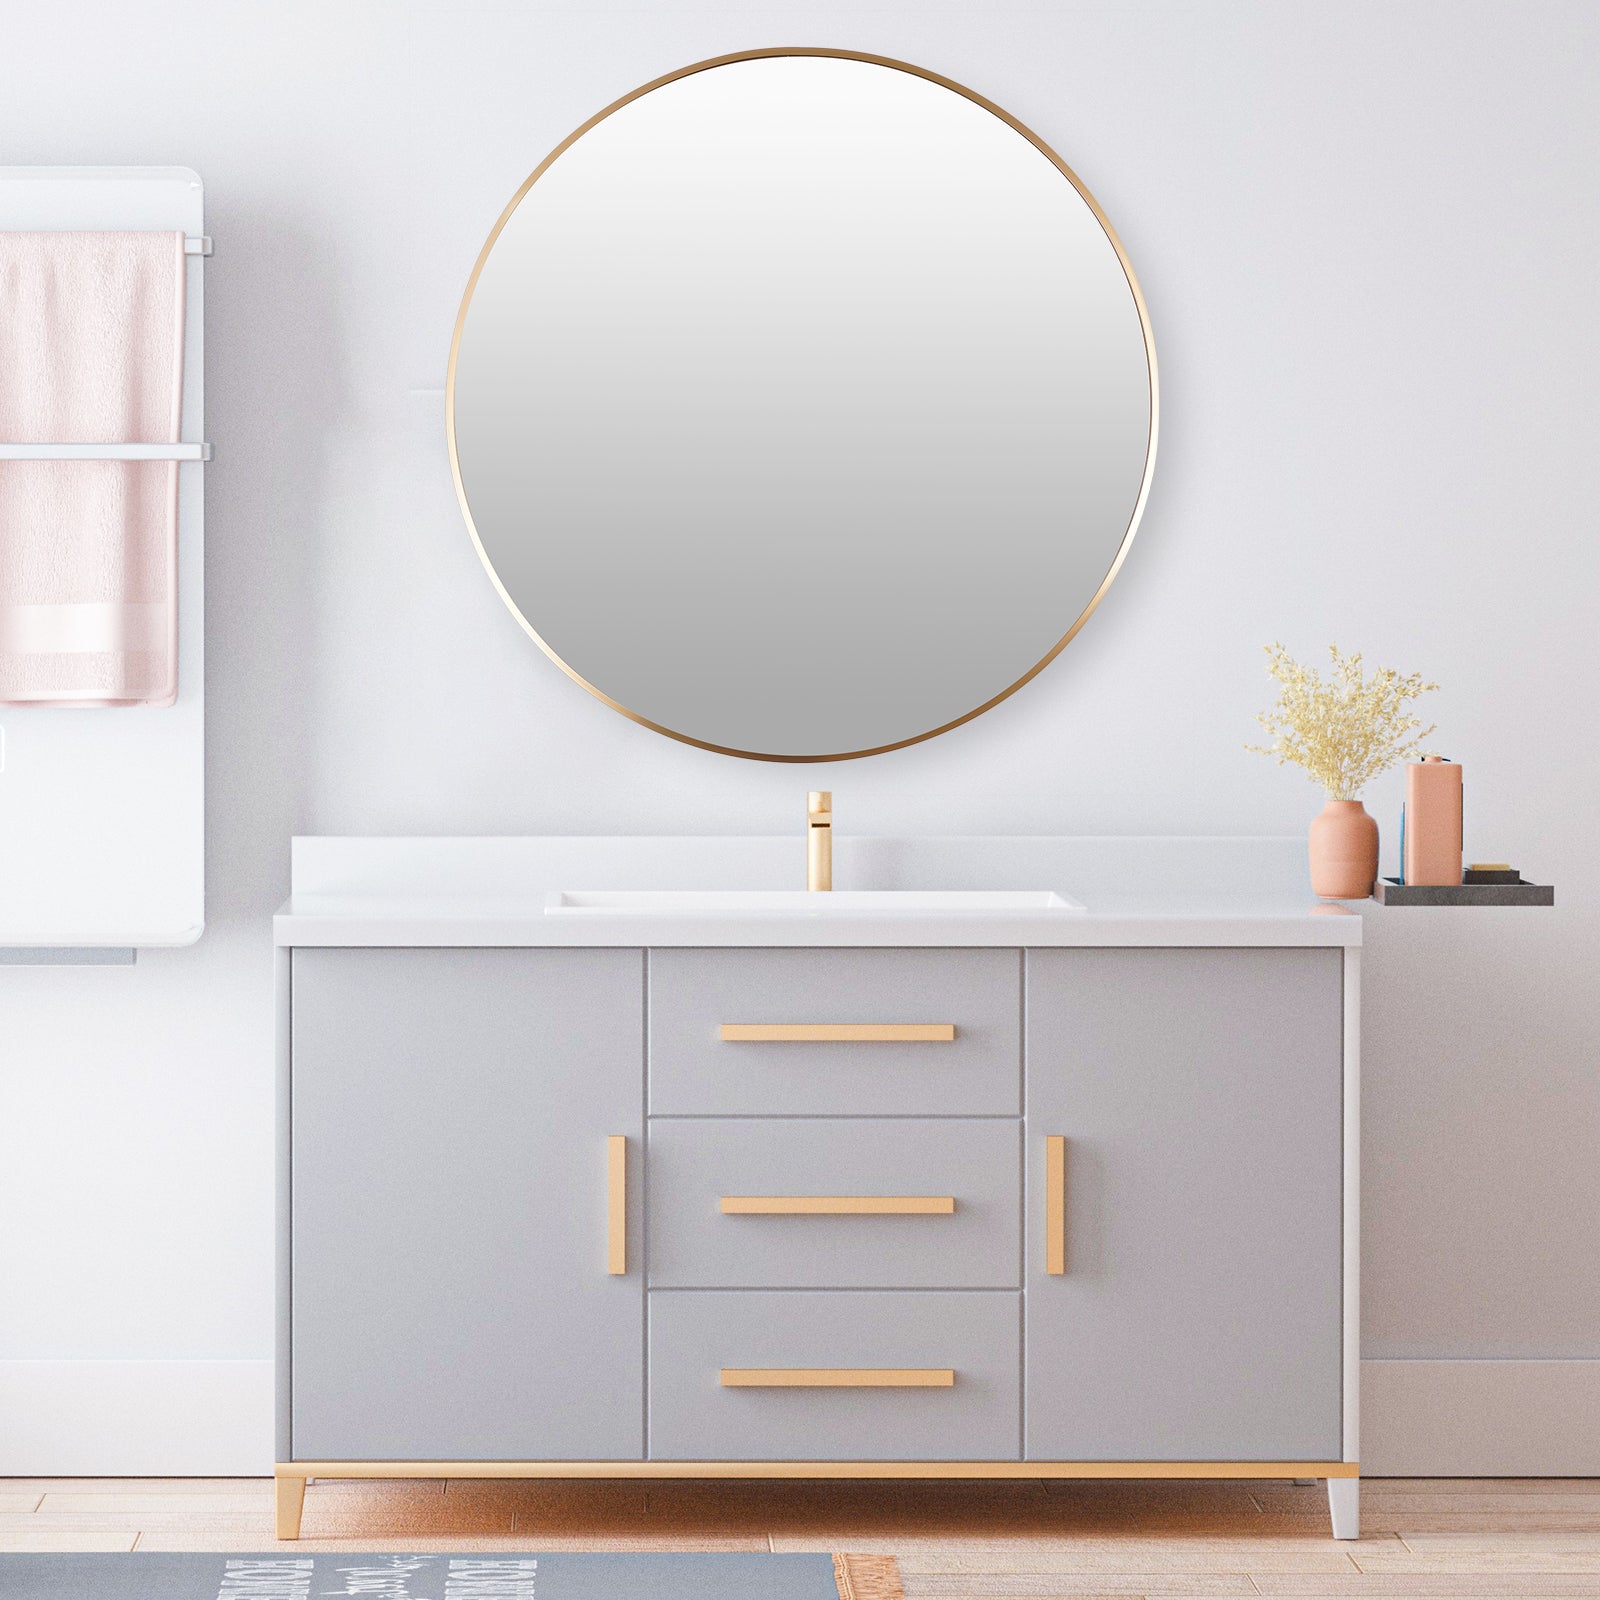 Cornice in metallo da parete con specchio rotondo dorato da 80 cm per soggiorno, camera da letto, bagno